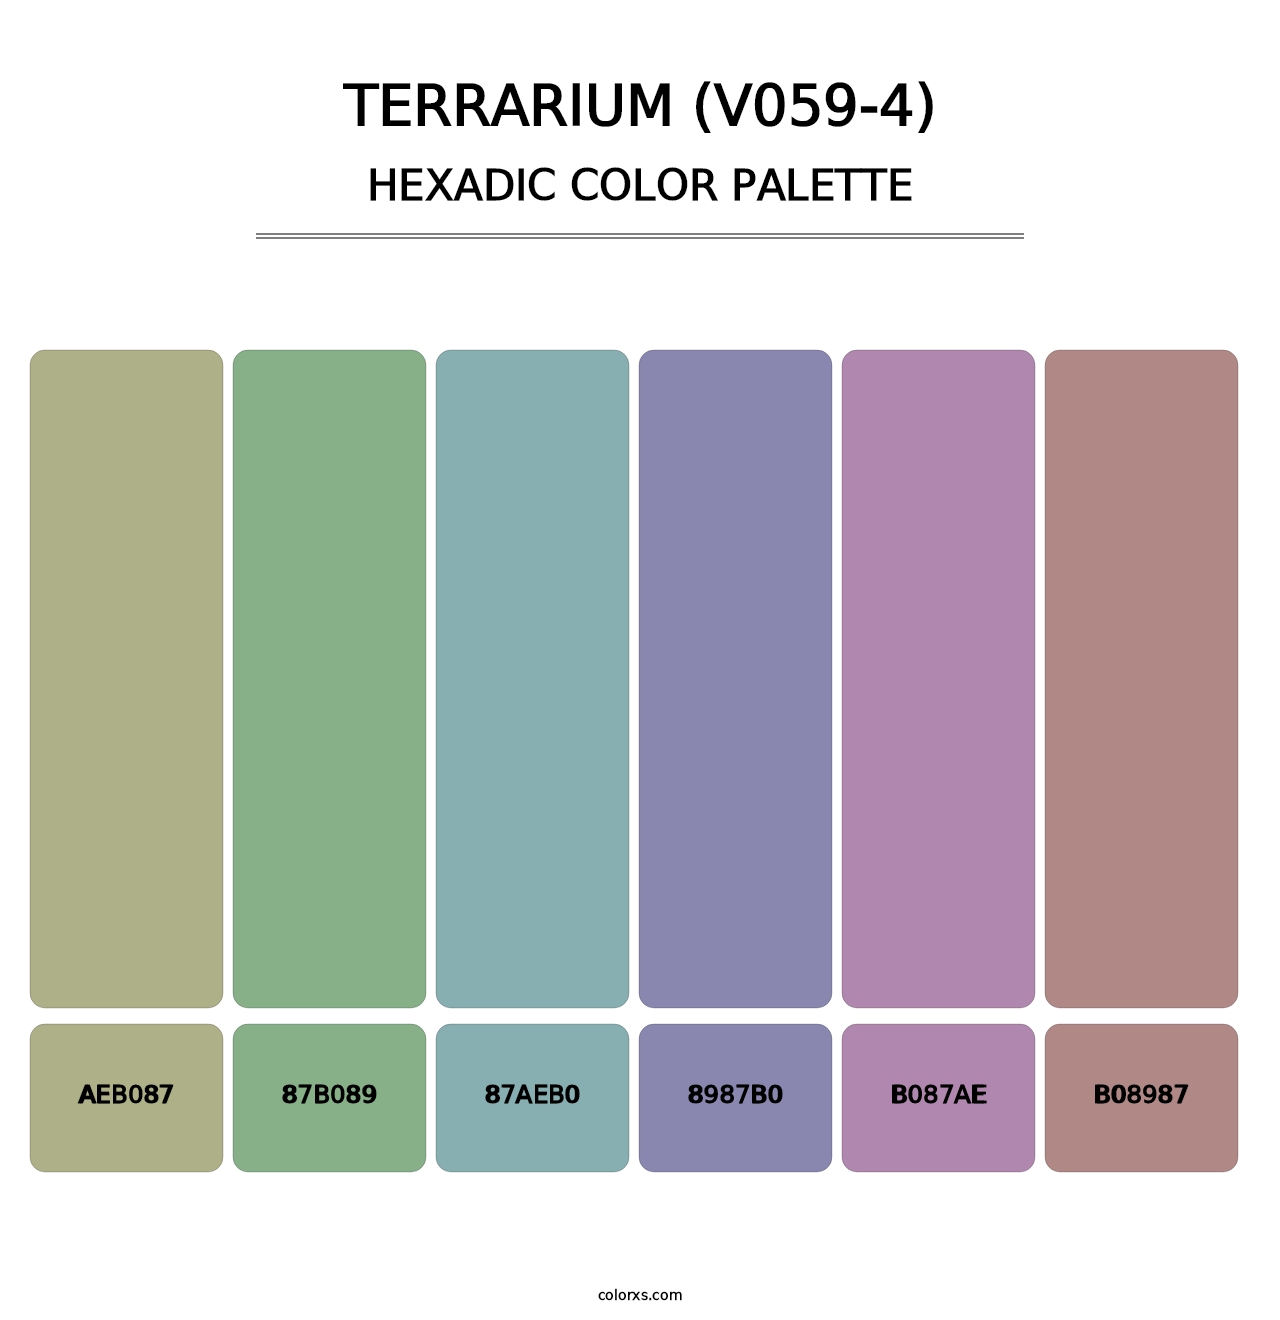 Terrarium (V059-4) - Hexadic Color Palette